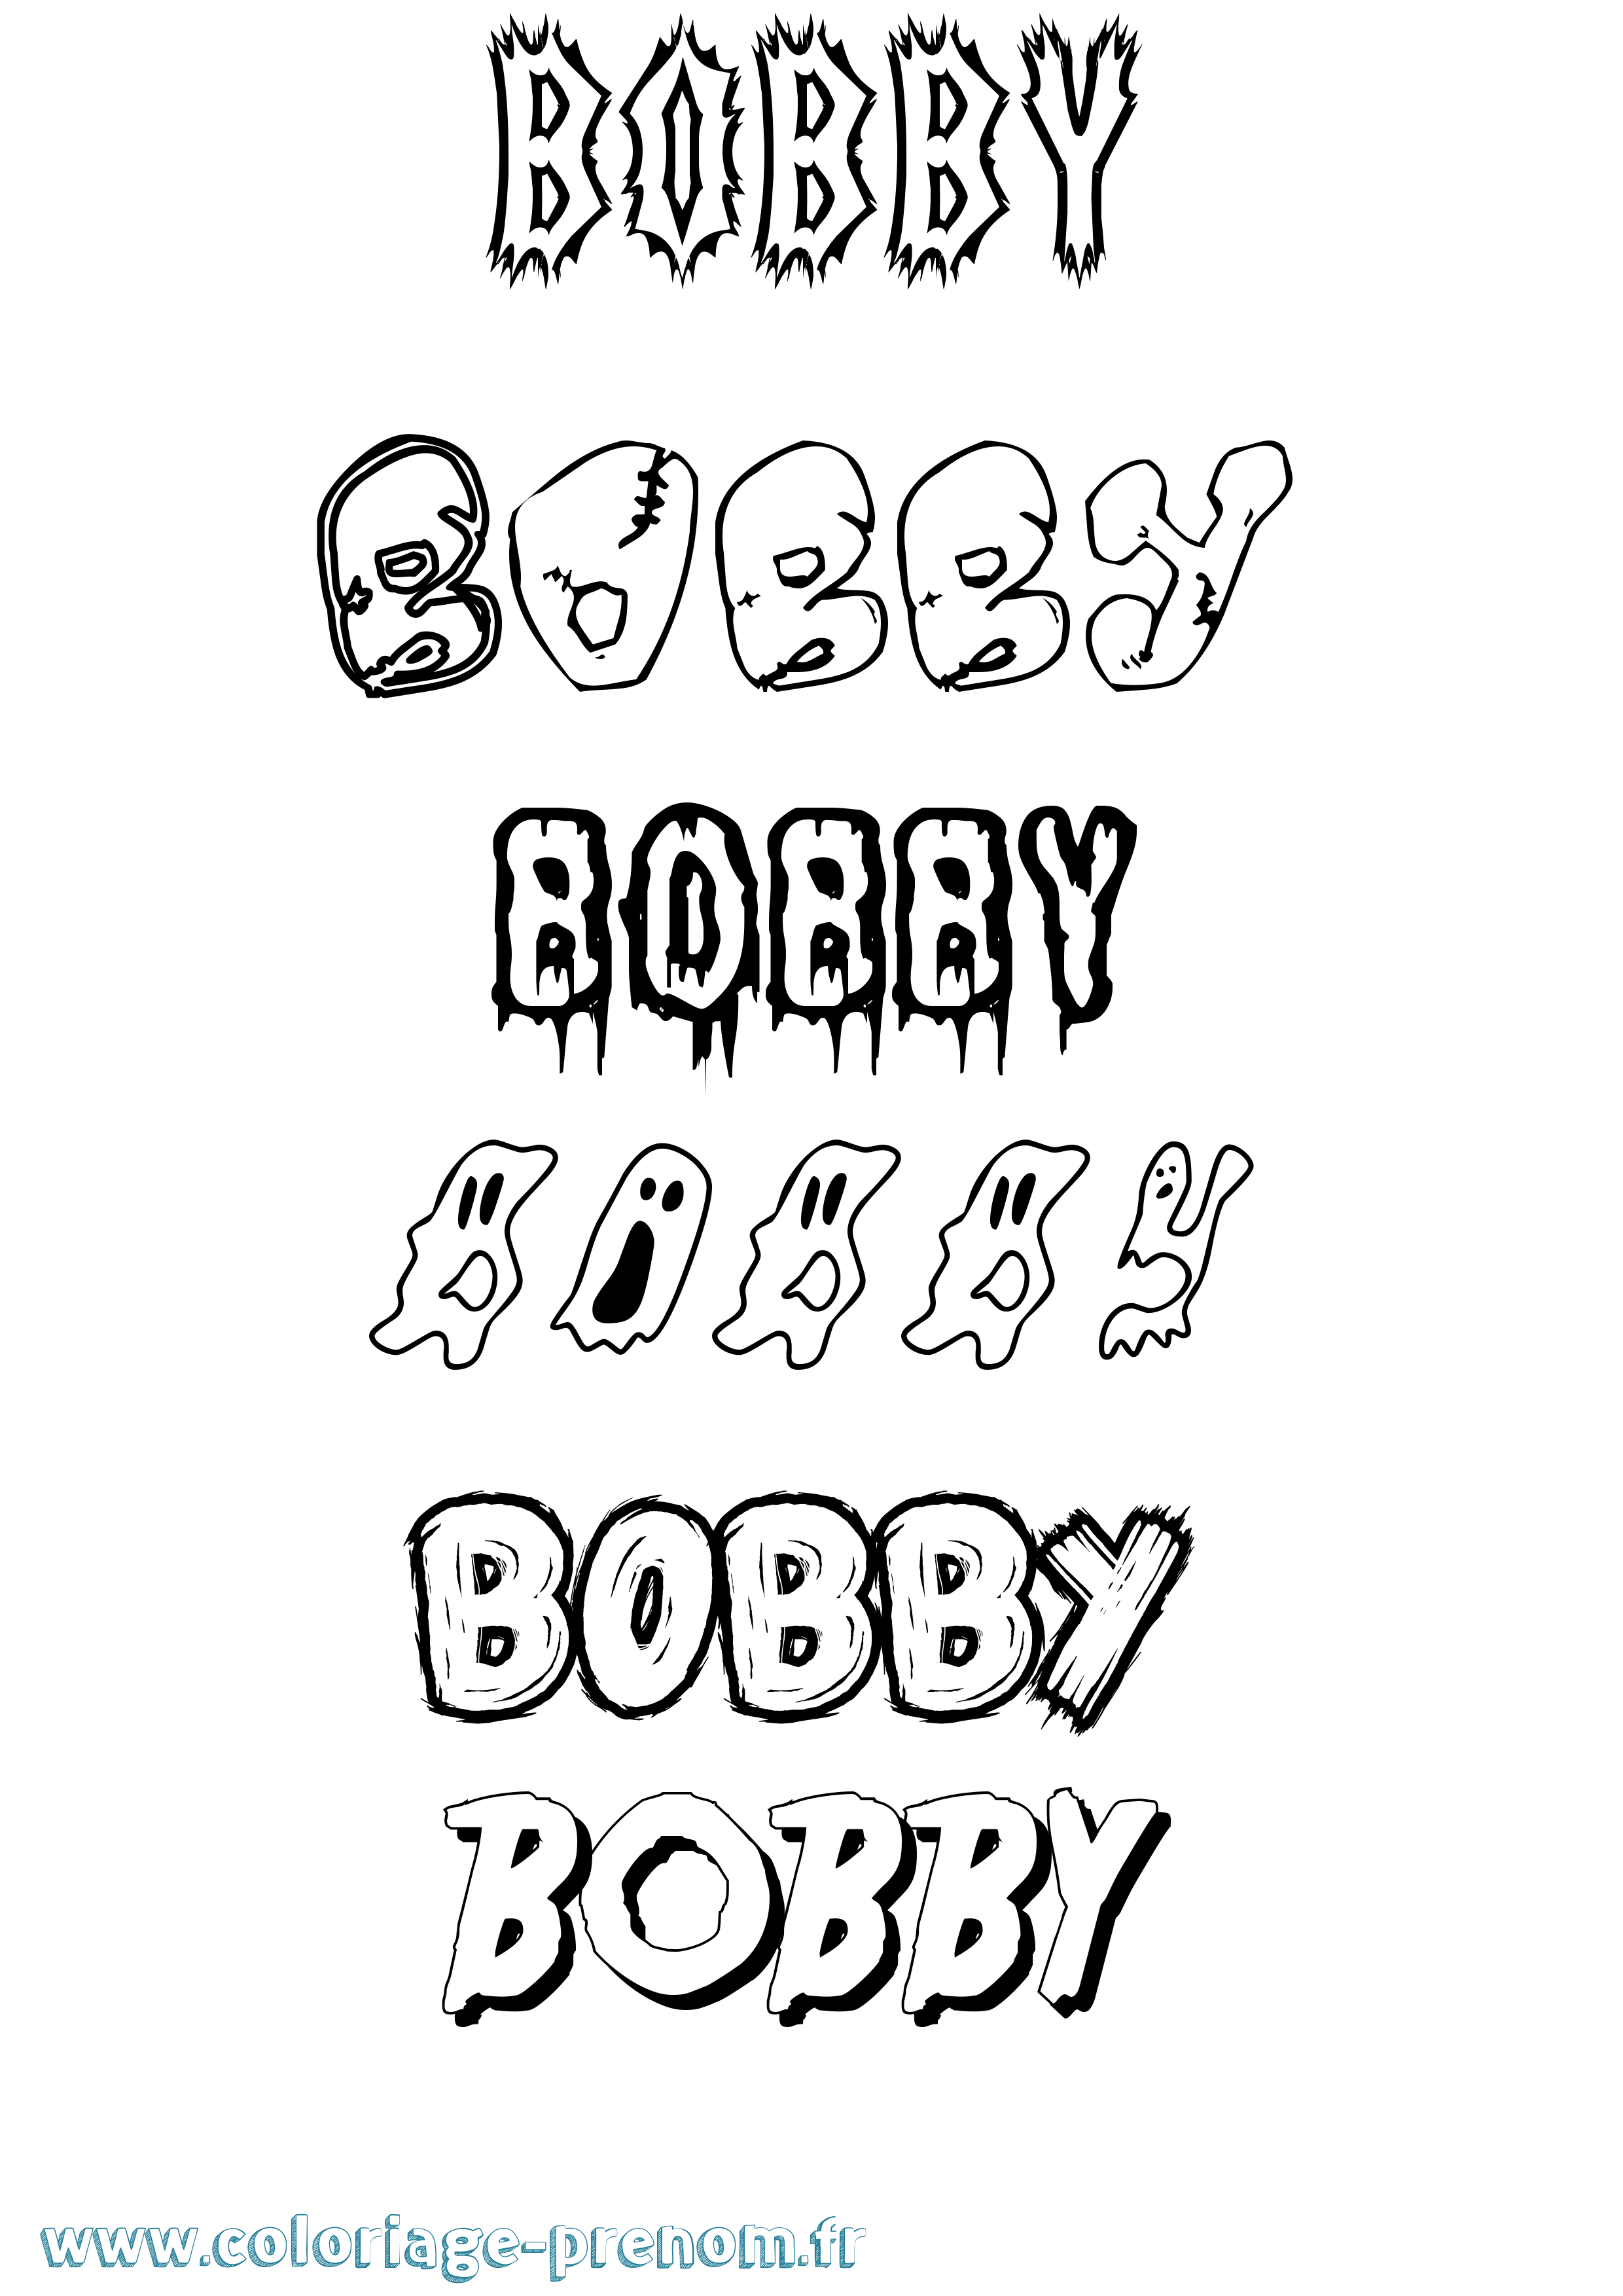 Coloriage prénom Bobby Frisson